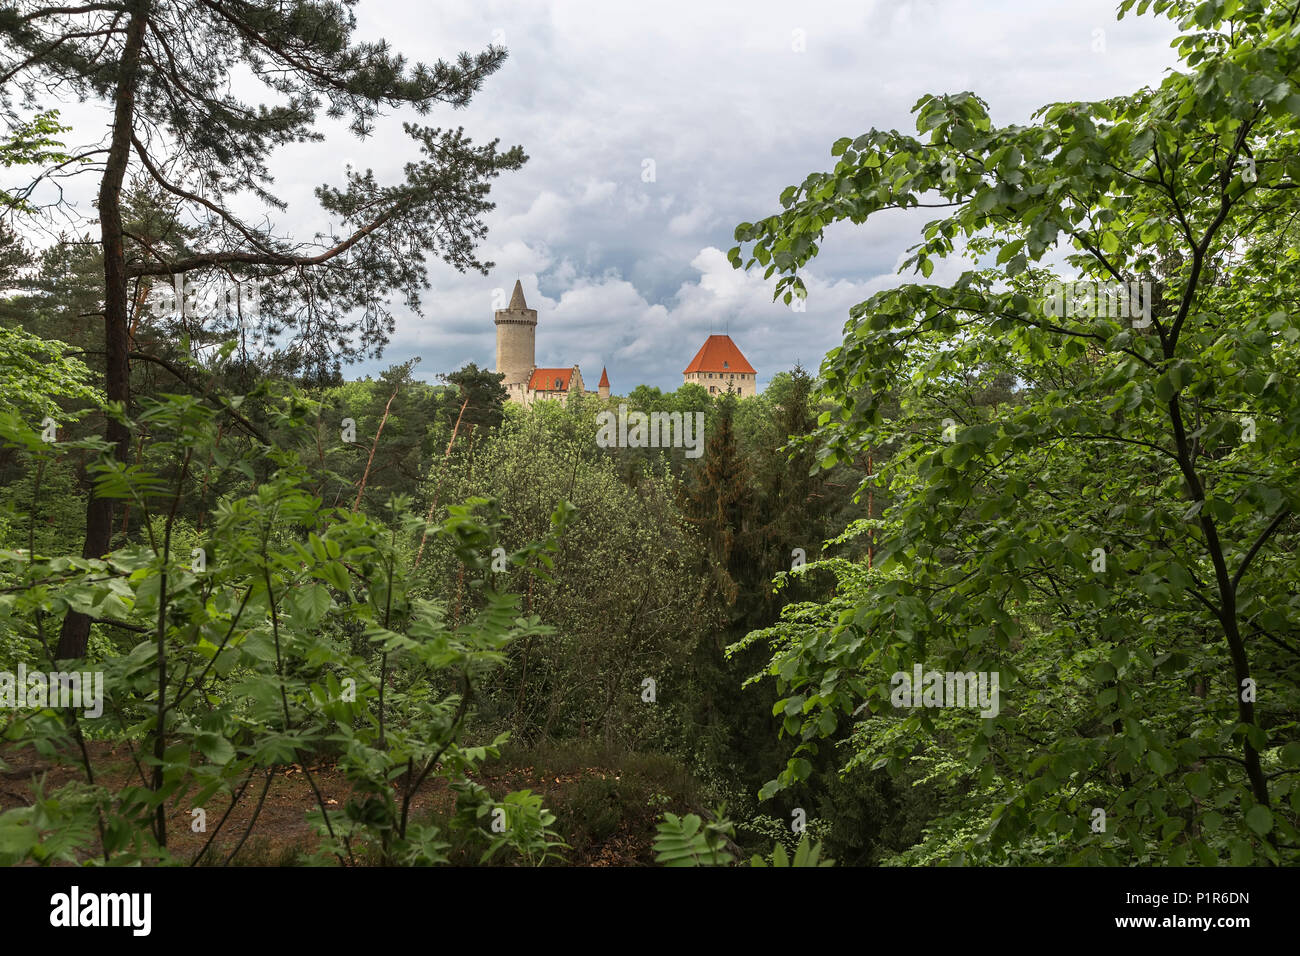 Kokořín - château, situé à 14 kilomètres au nord-est de la ville de Melnik. Il a été construit dans la première moitié du XIV siècle Banque D'Images